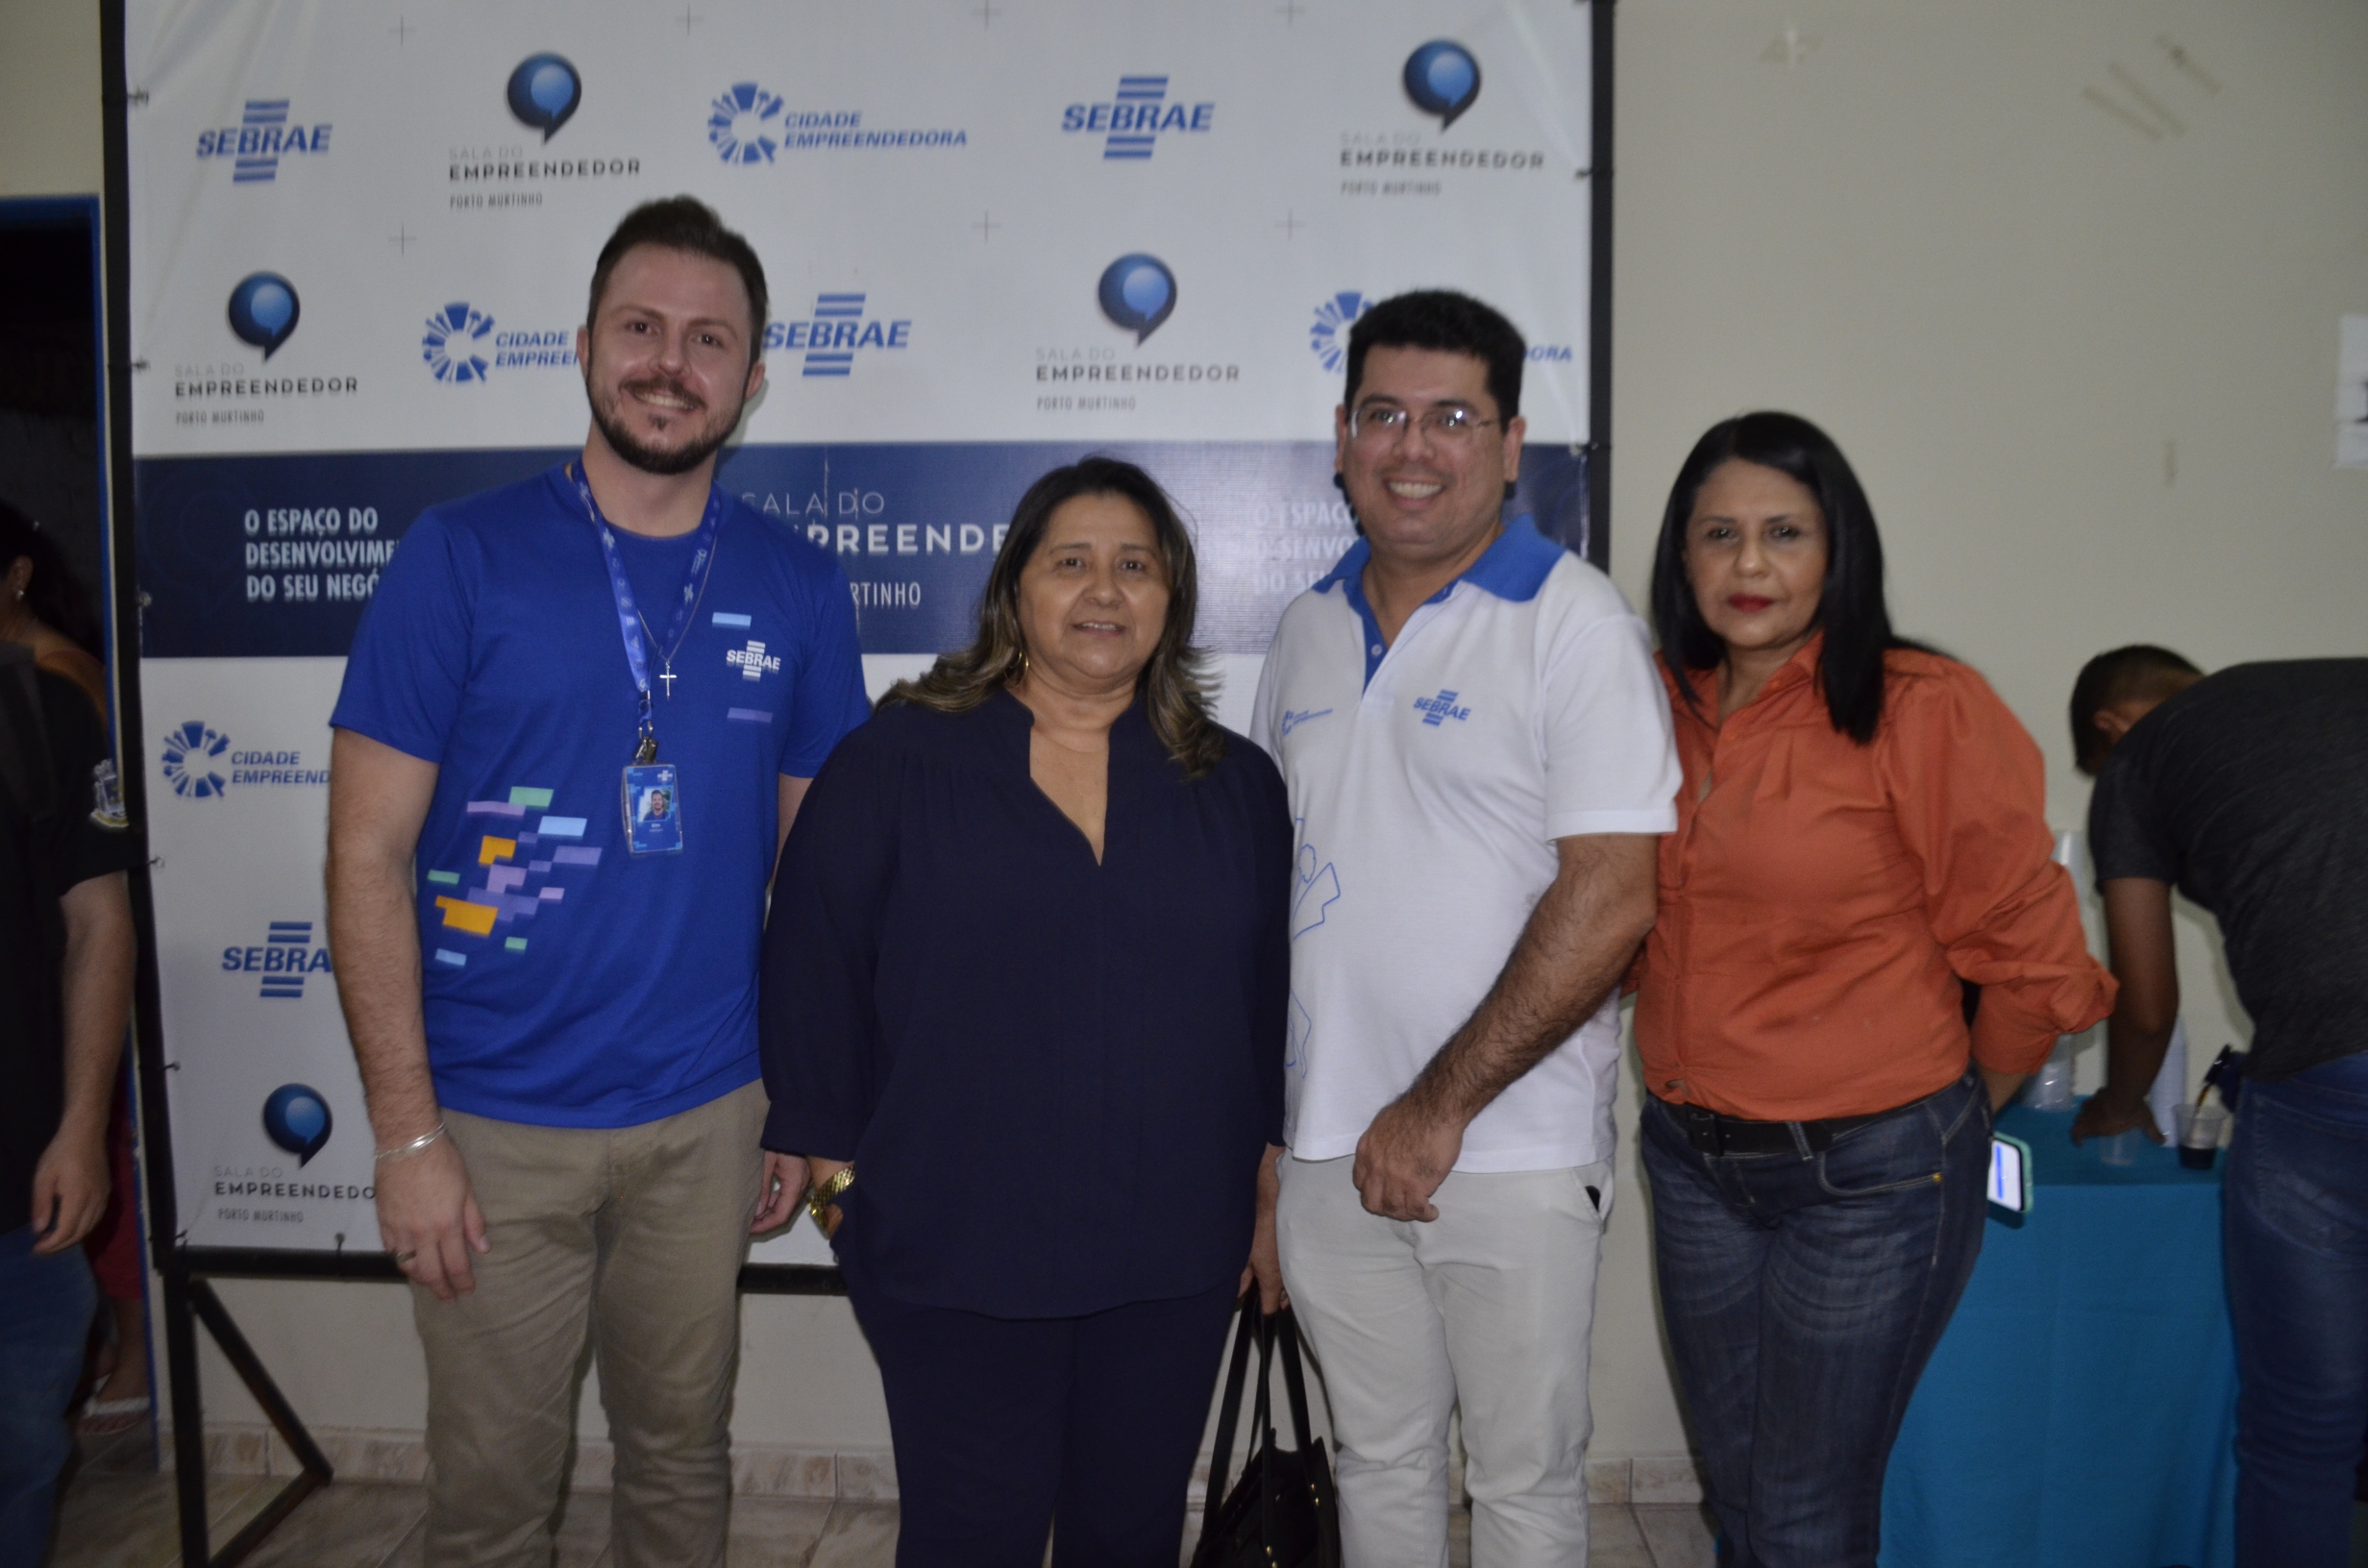 Projeto 'Cidade Empreendedora' uma parceria entre o Sebrae MS e Prefeitura de Porto Murtinho realizou Oficina Branding e Marketing Territorial